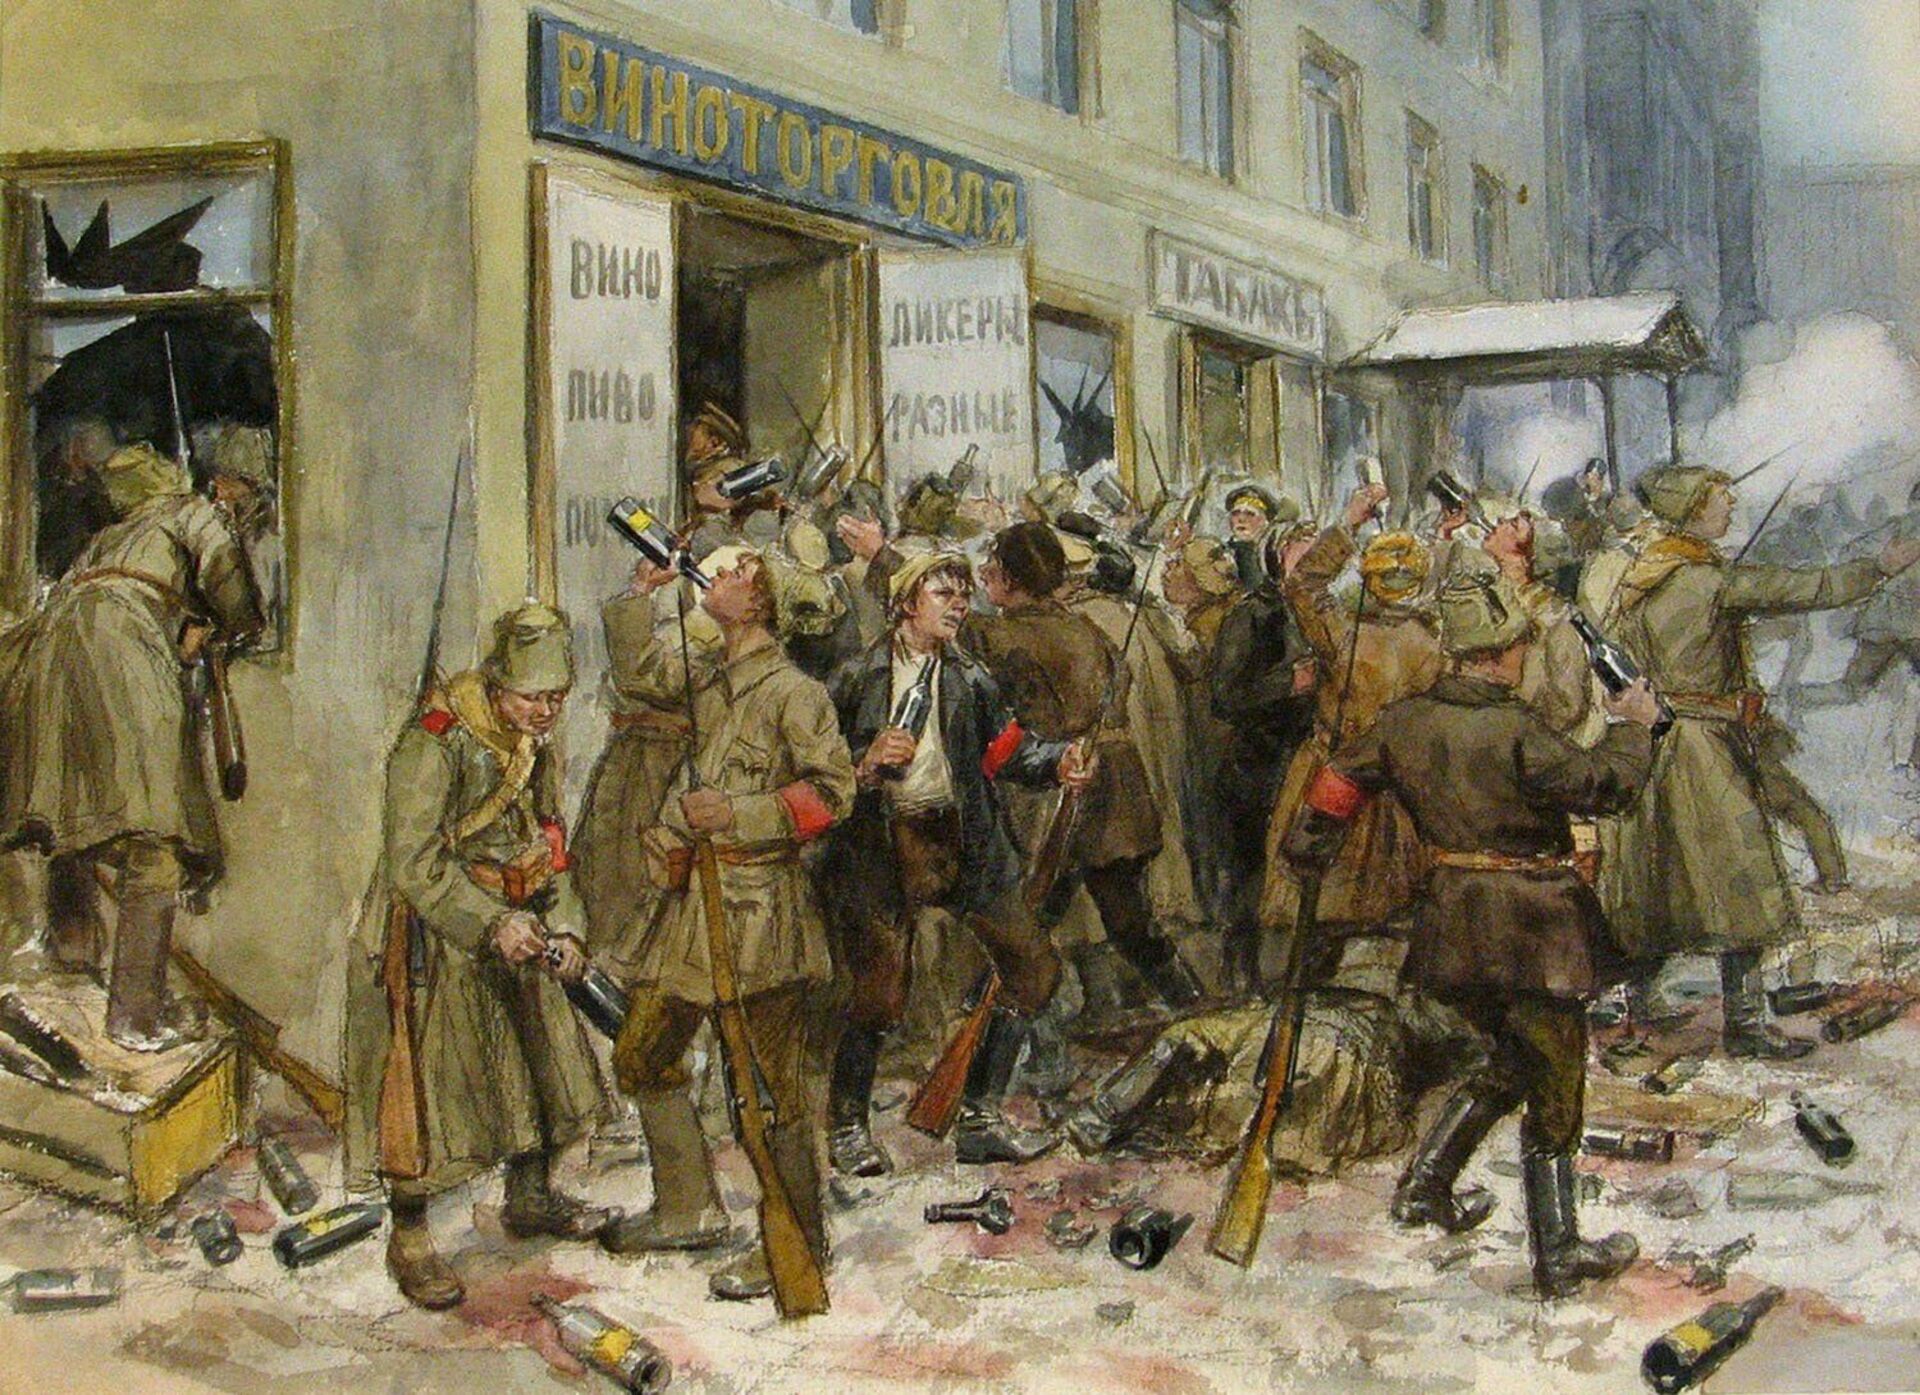 Россия 1917 год новый год